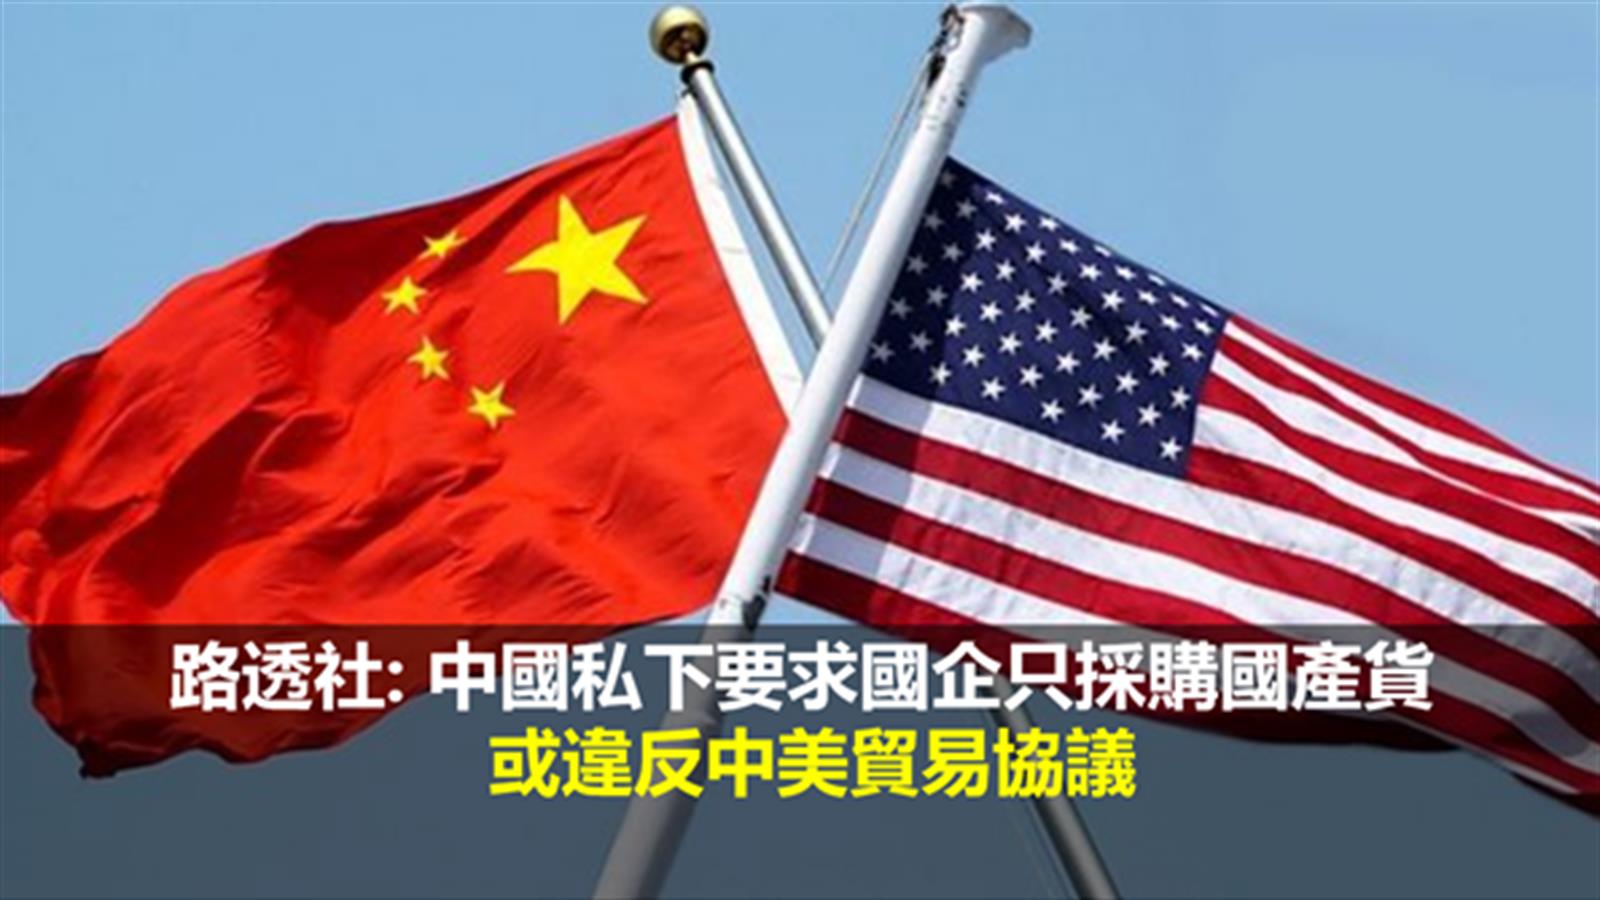 路透社: 中國私下要求國企只採購國產貨 或違反中美貿易協議